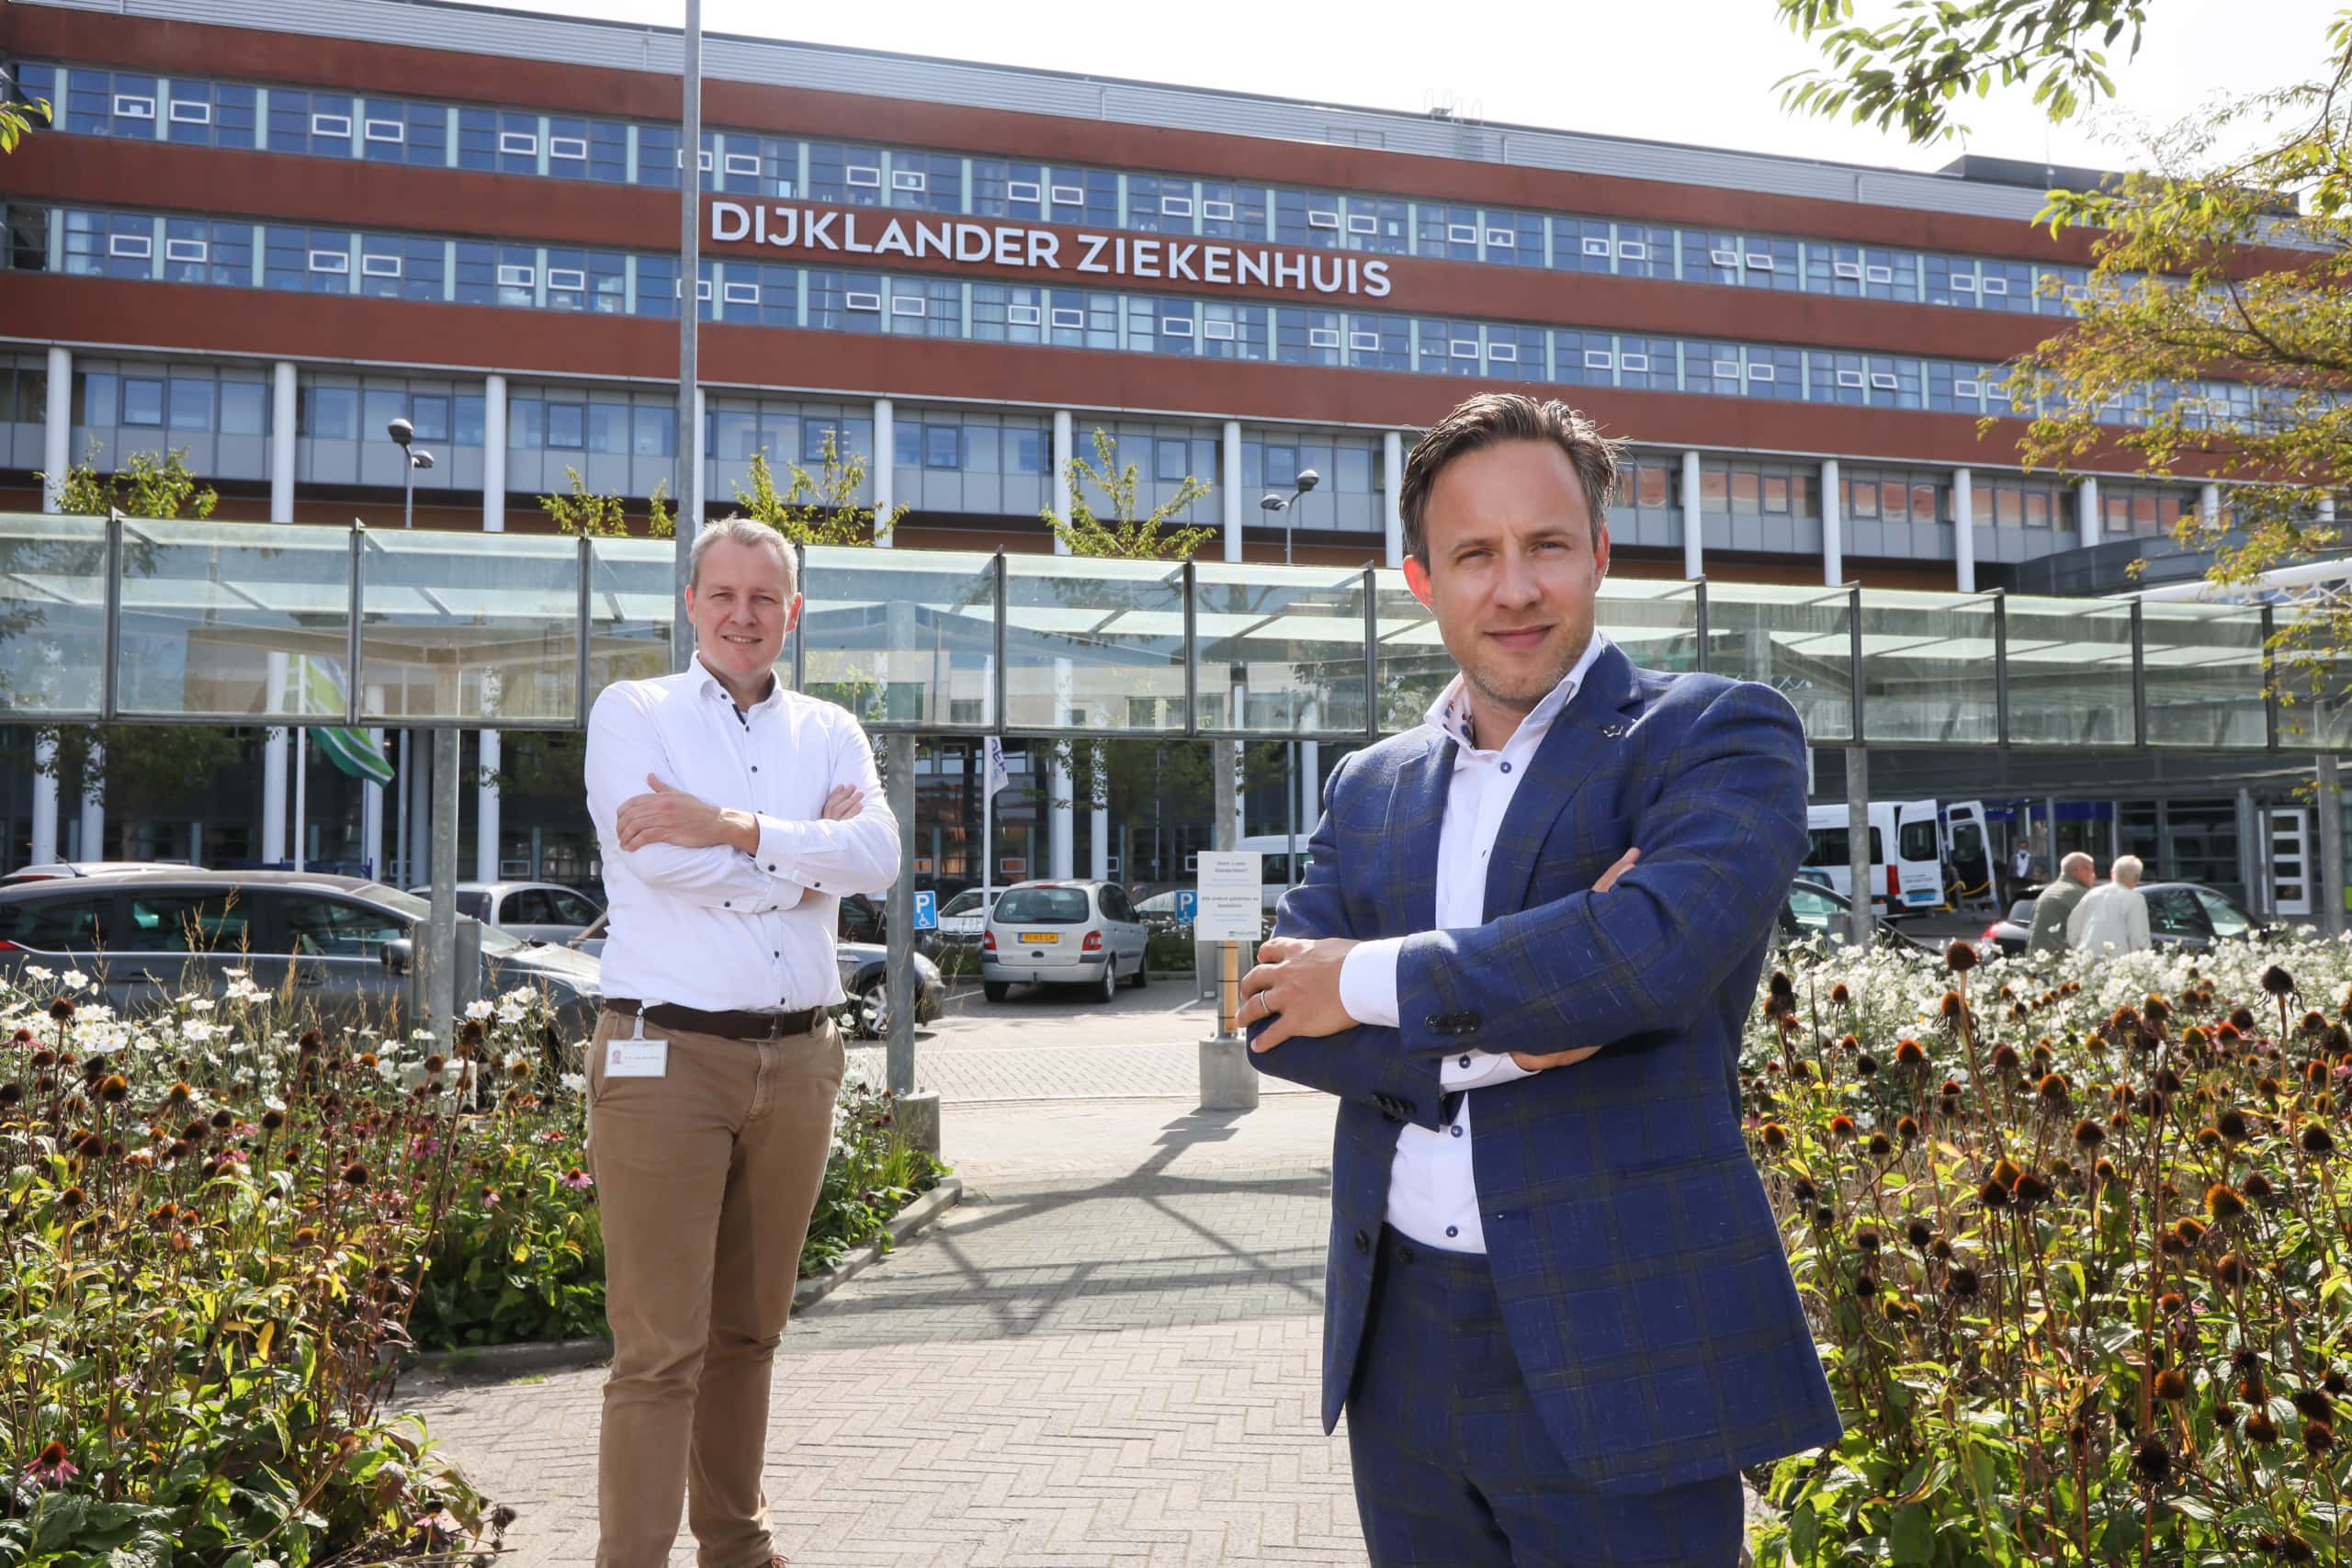 Op de foto, links, Martijn van den Berg, Afdelingshoofd Logistiek & Facilitair Functioneel Beheer van het Dijklander ziekenhuis in Hoorn en Menno Huiberts, Key accountmanager GP Groot inzameling en recycling.